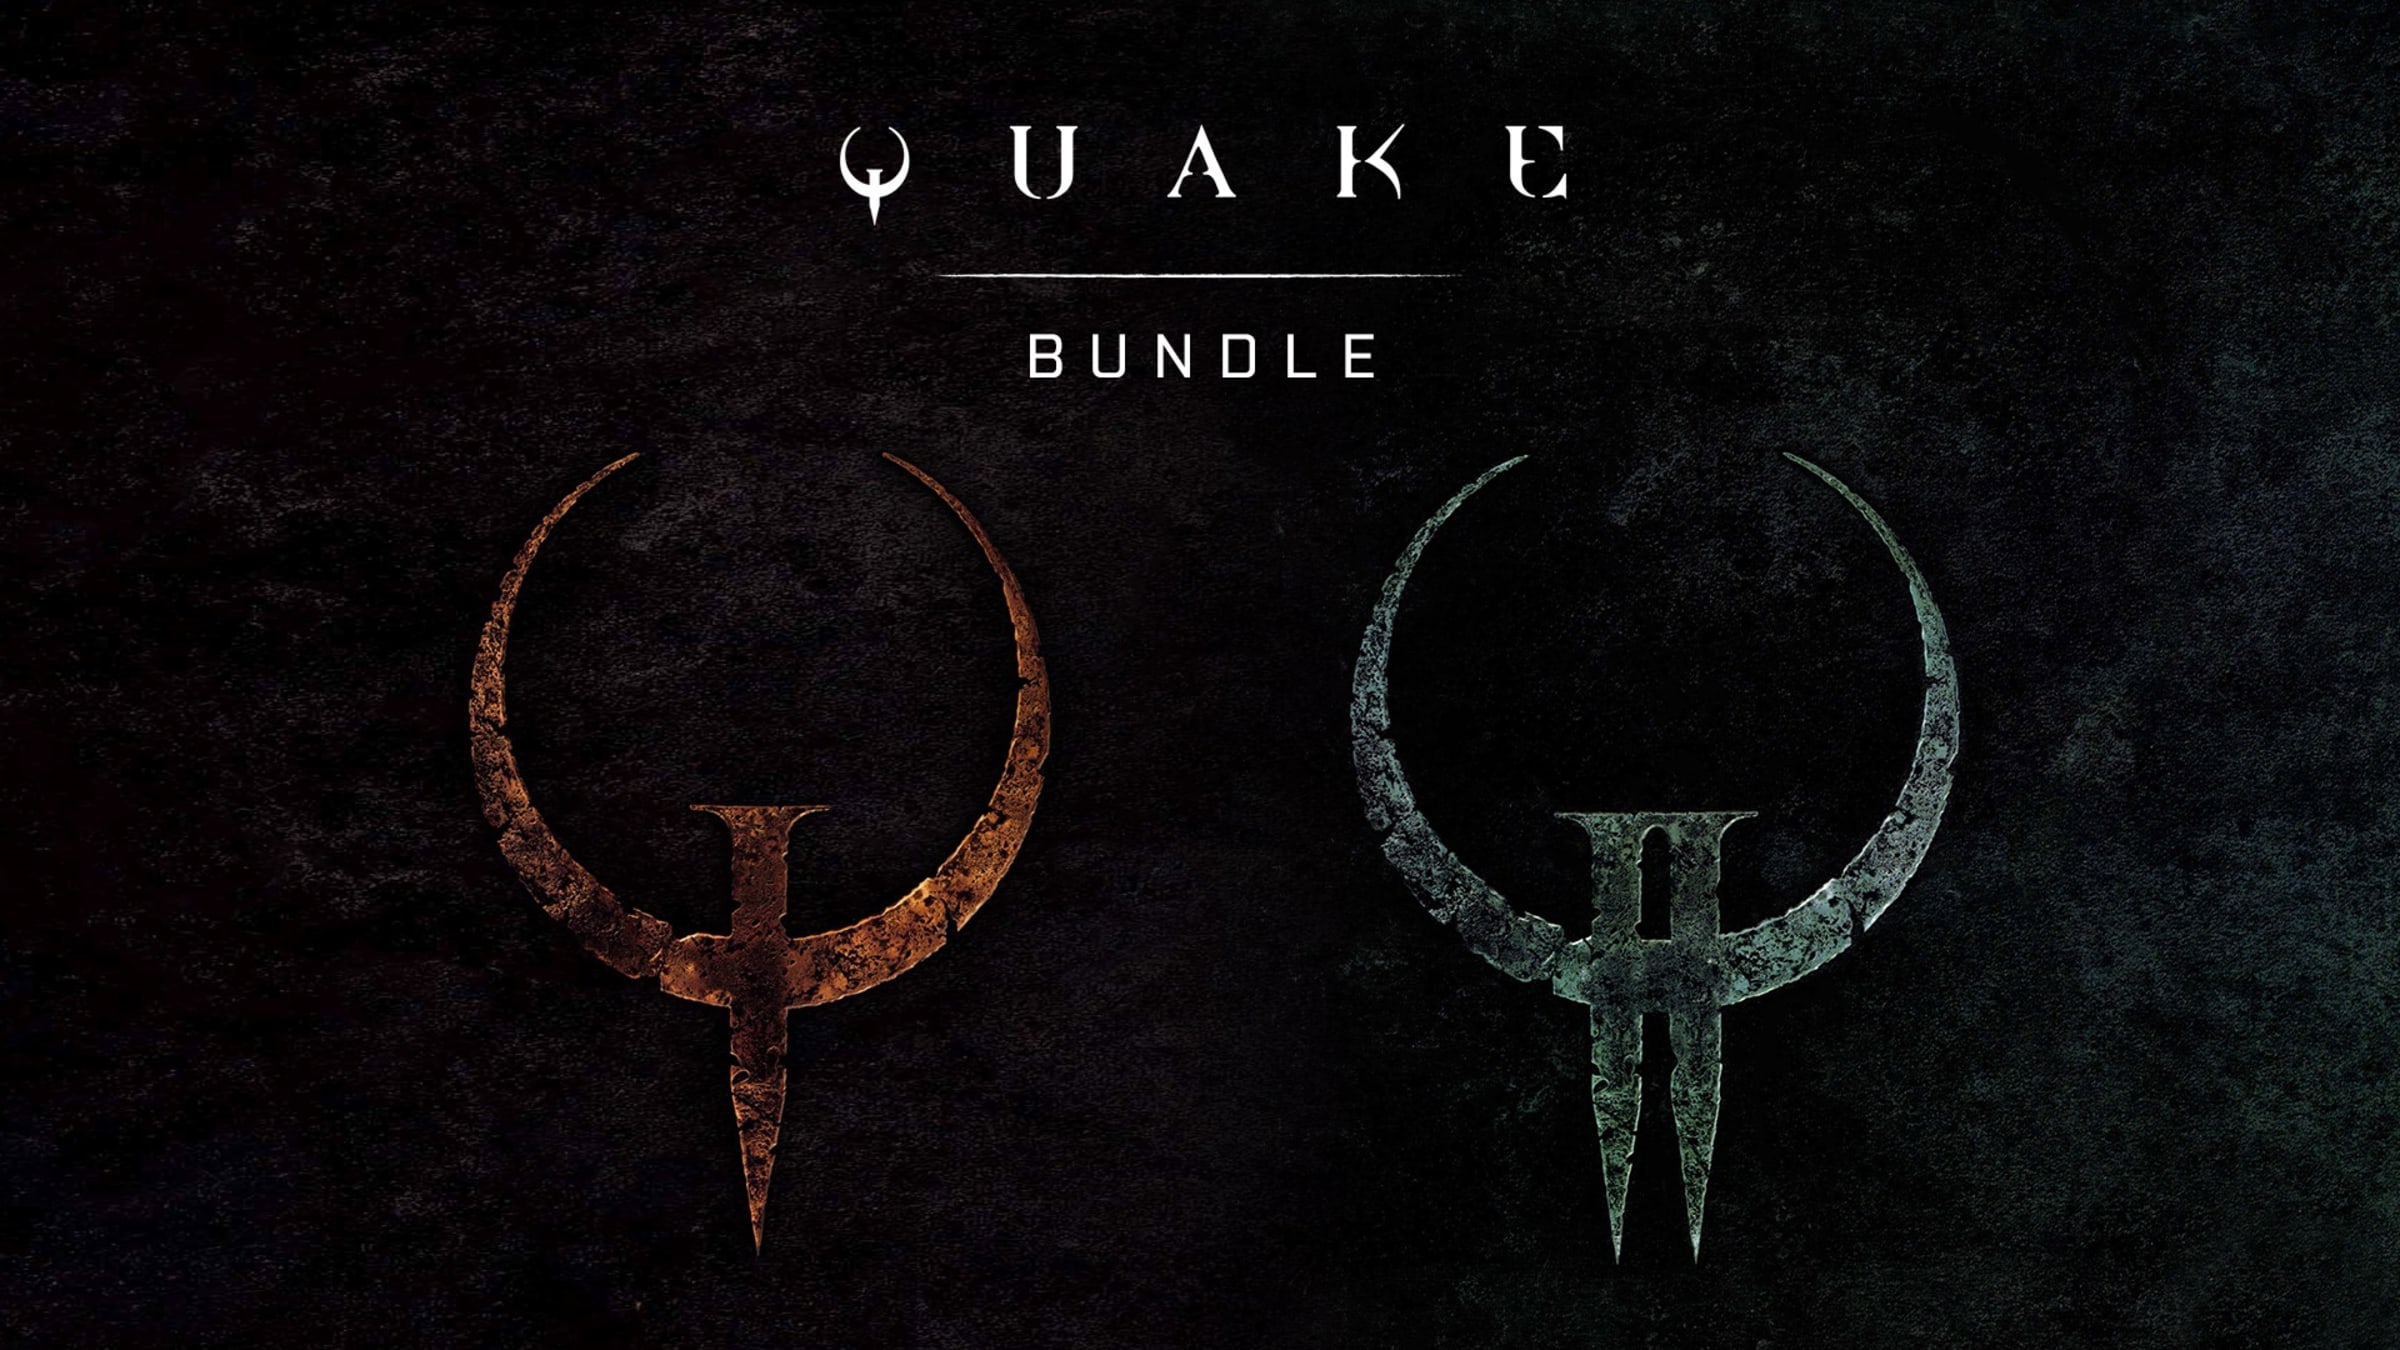 Quake + Quake II Enhanced Bundle for Nintendo Switch - Nintendo Official Site